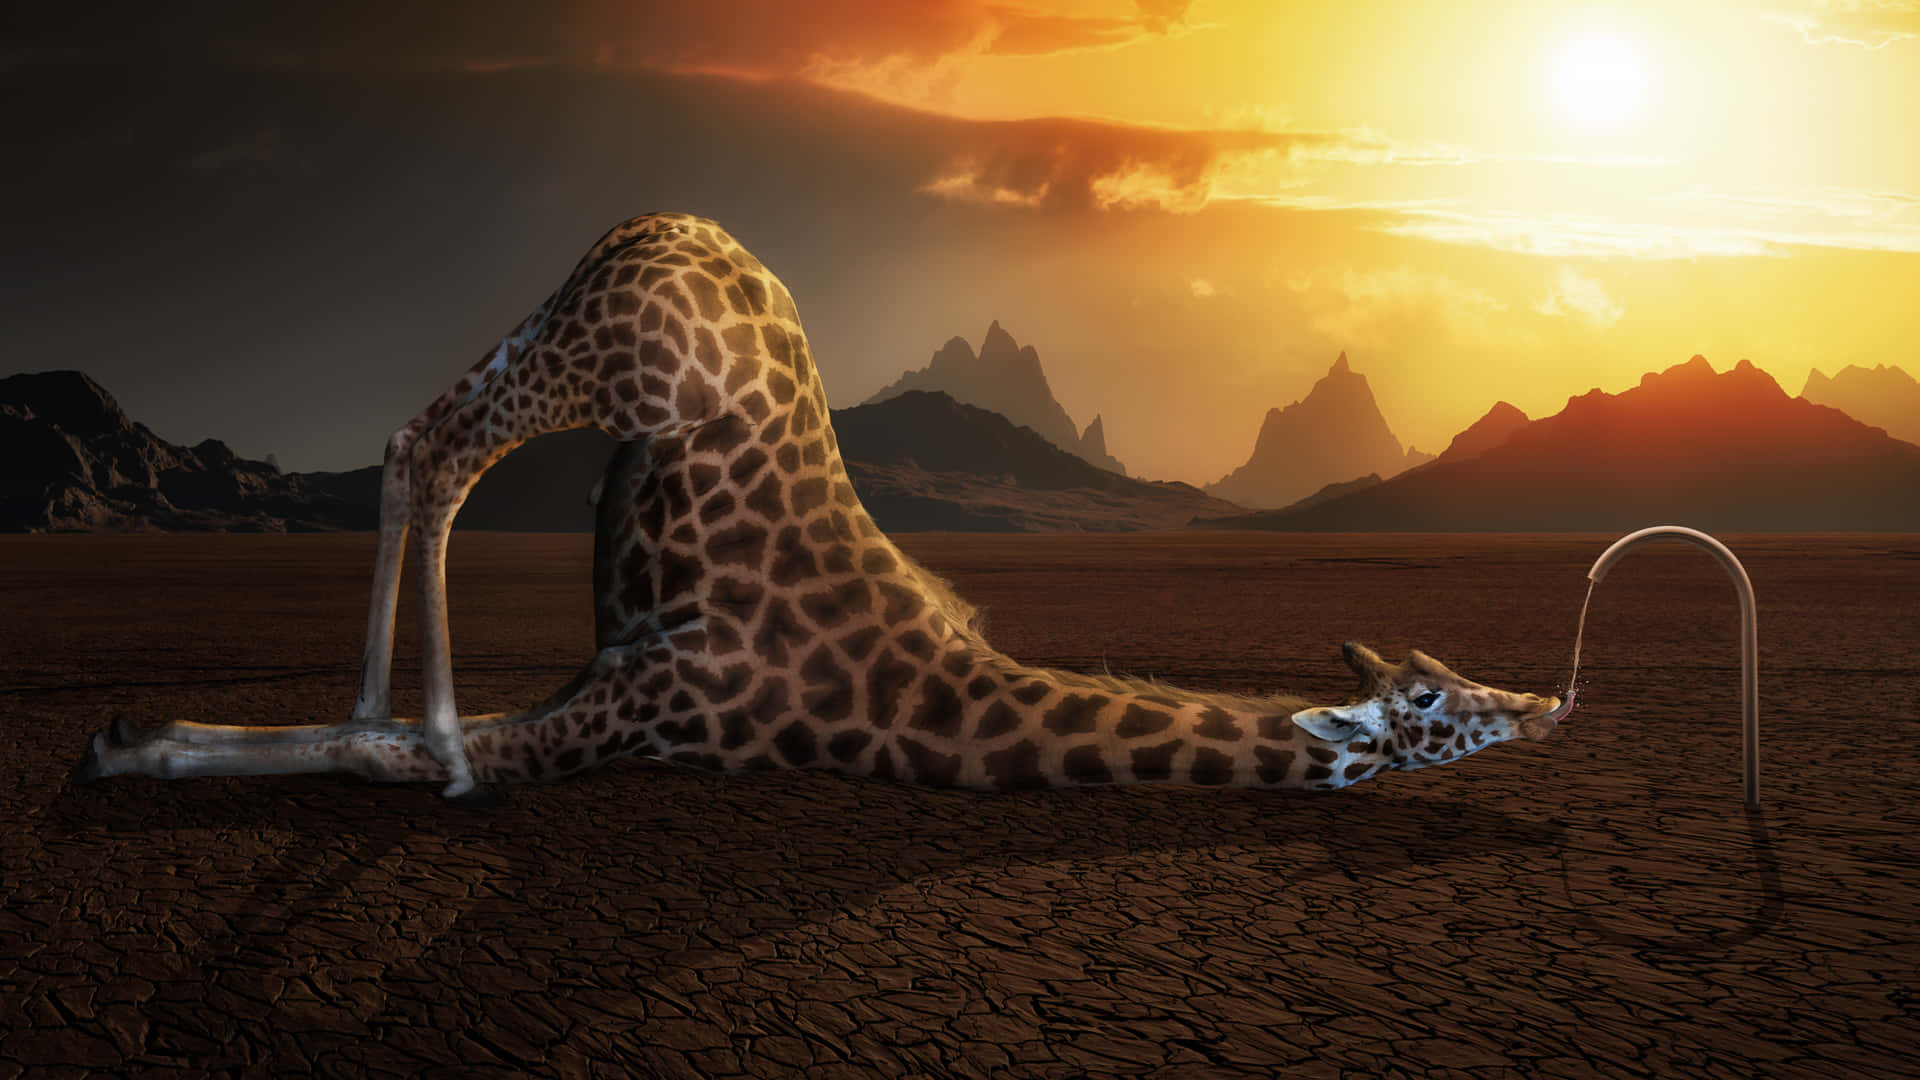 Imagemde Uma Girafa Estranha Bebendo Água De Uma Torneira No Deserto.